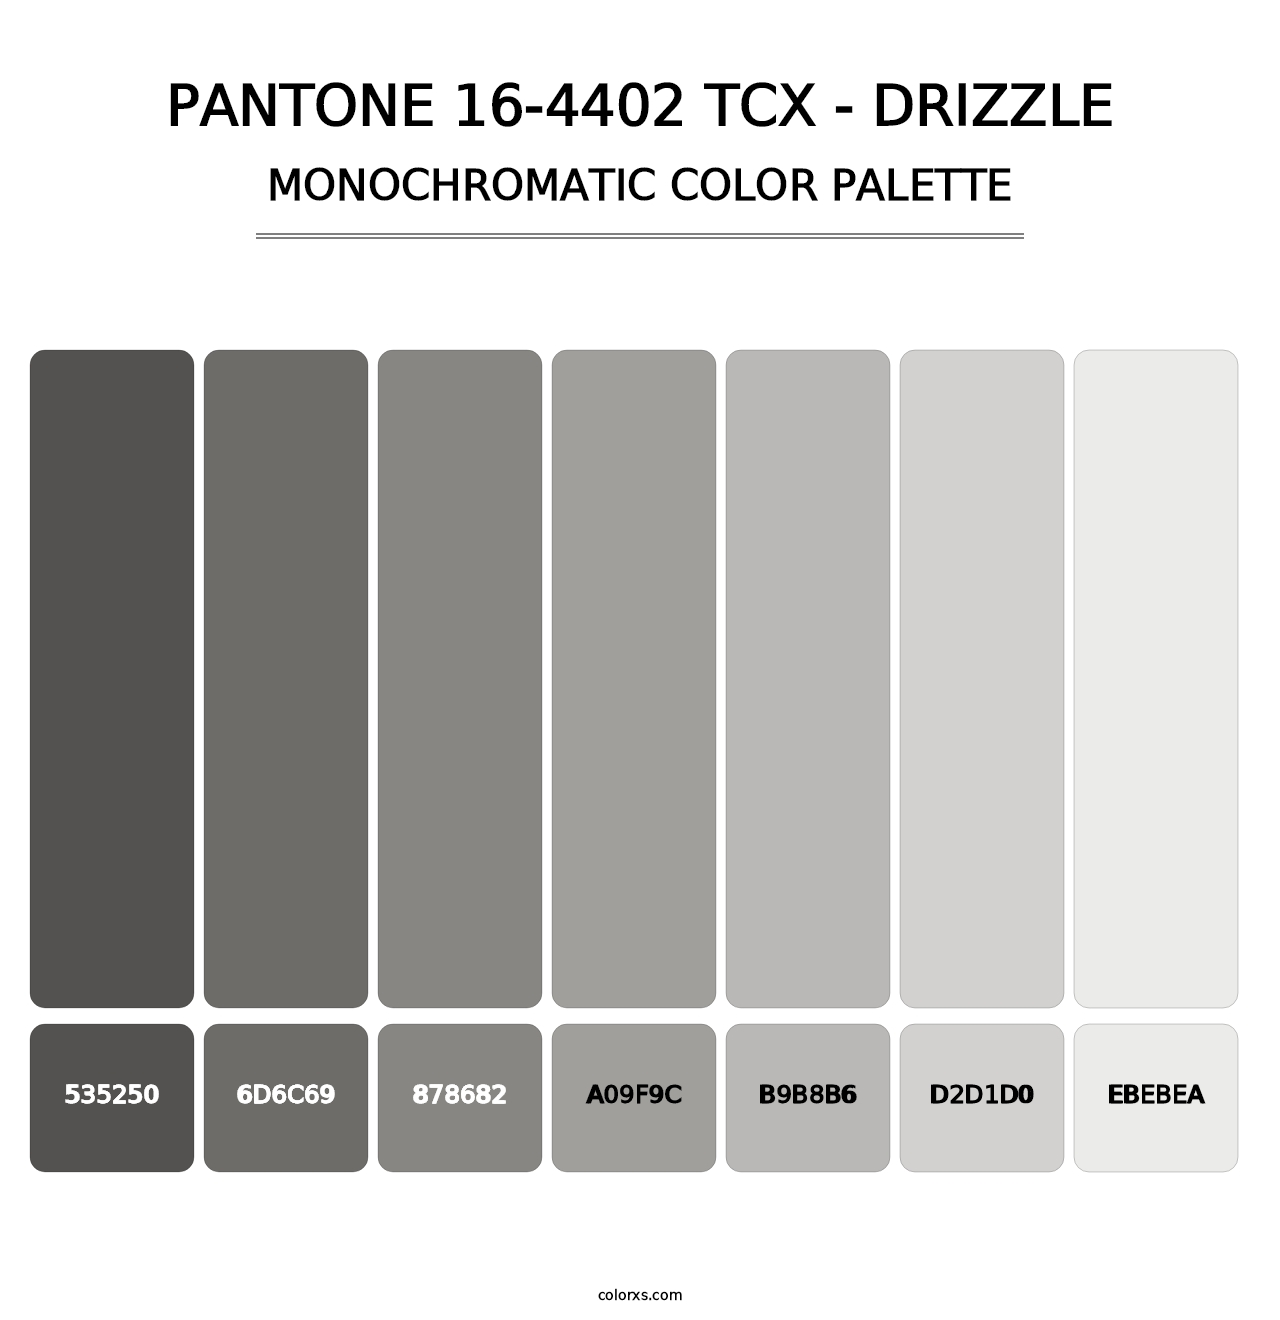 PANTONE 16-4402 TCX - Drizzle - Monochromatic Color Palette